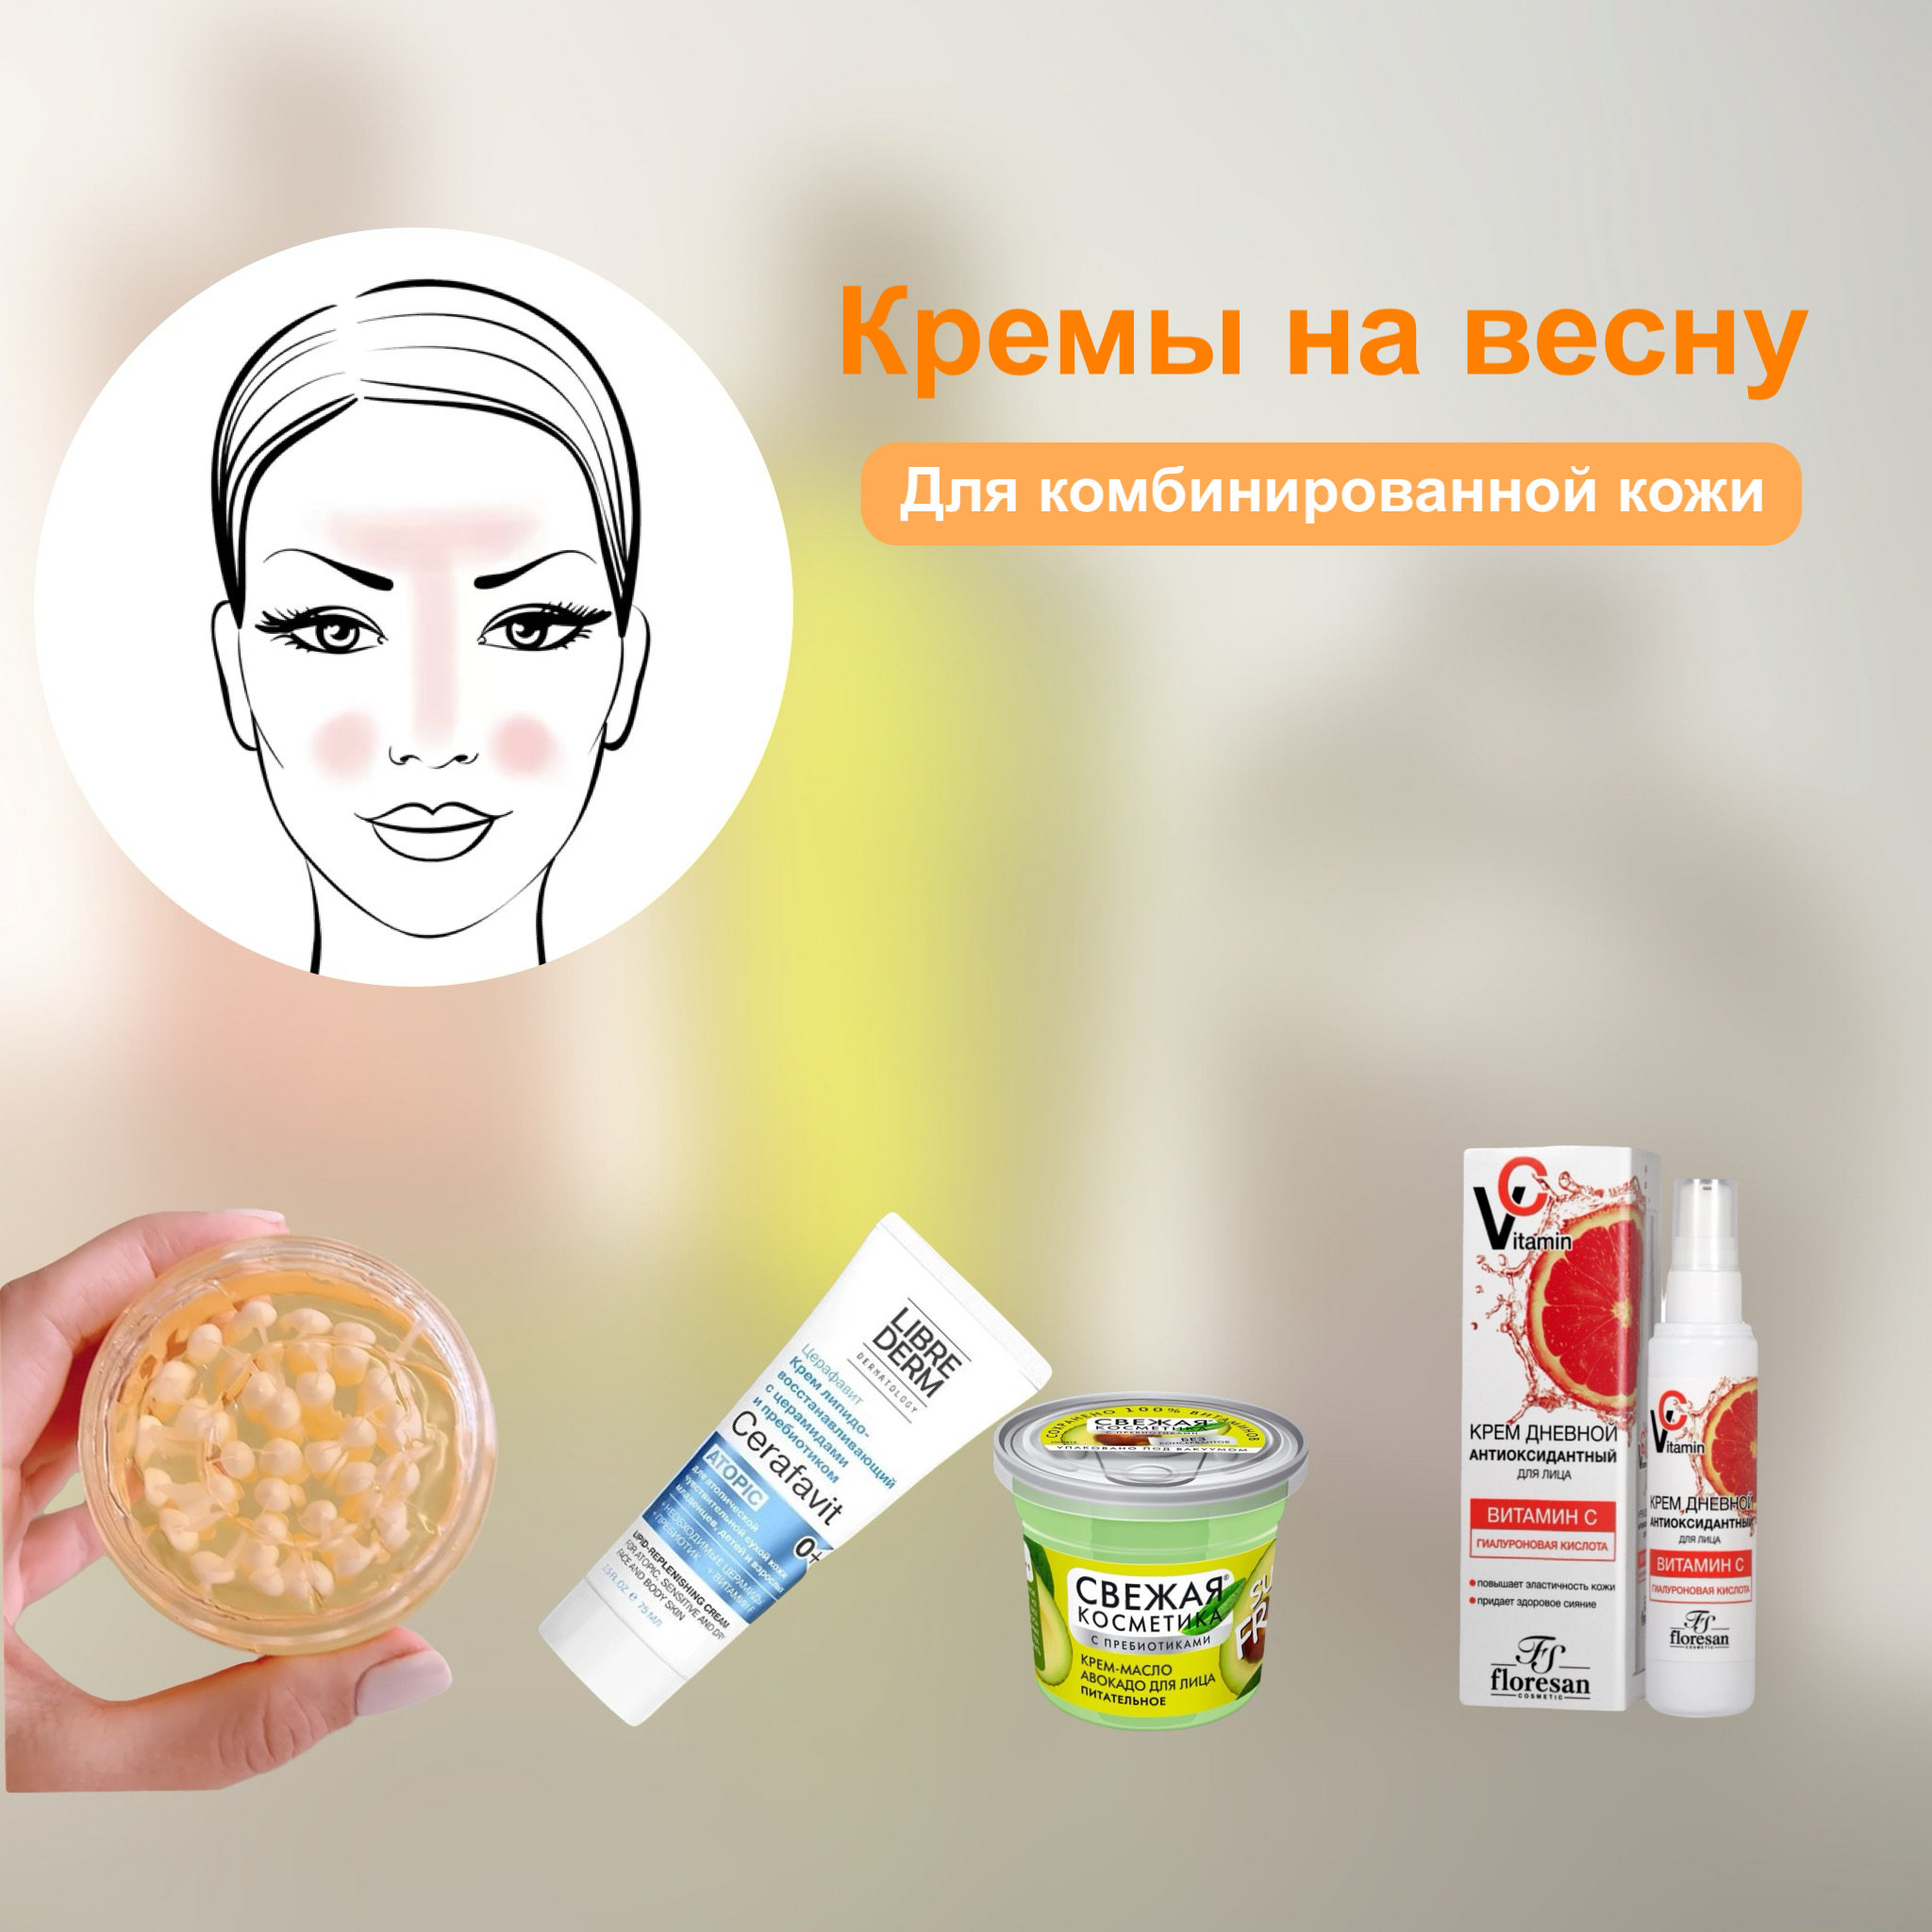 https-::cosmetic-discount.ru:blogs:blog:podborka-kremov-na-vesnu-i-leto-dlya-kombinirovannoy-i-normalnoy-kozhiimage-10-03-24-10-00-1.jpeg